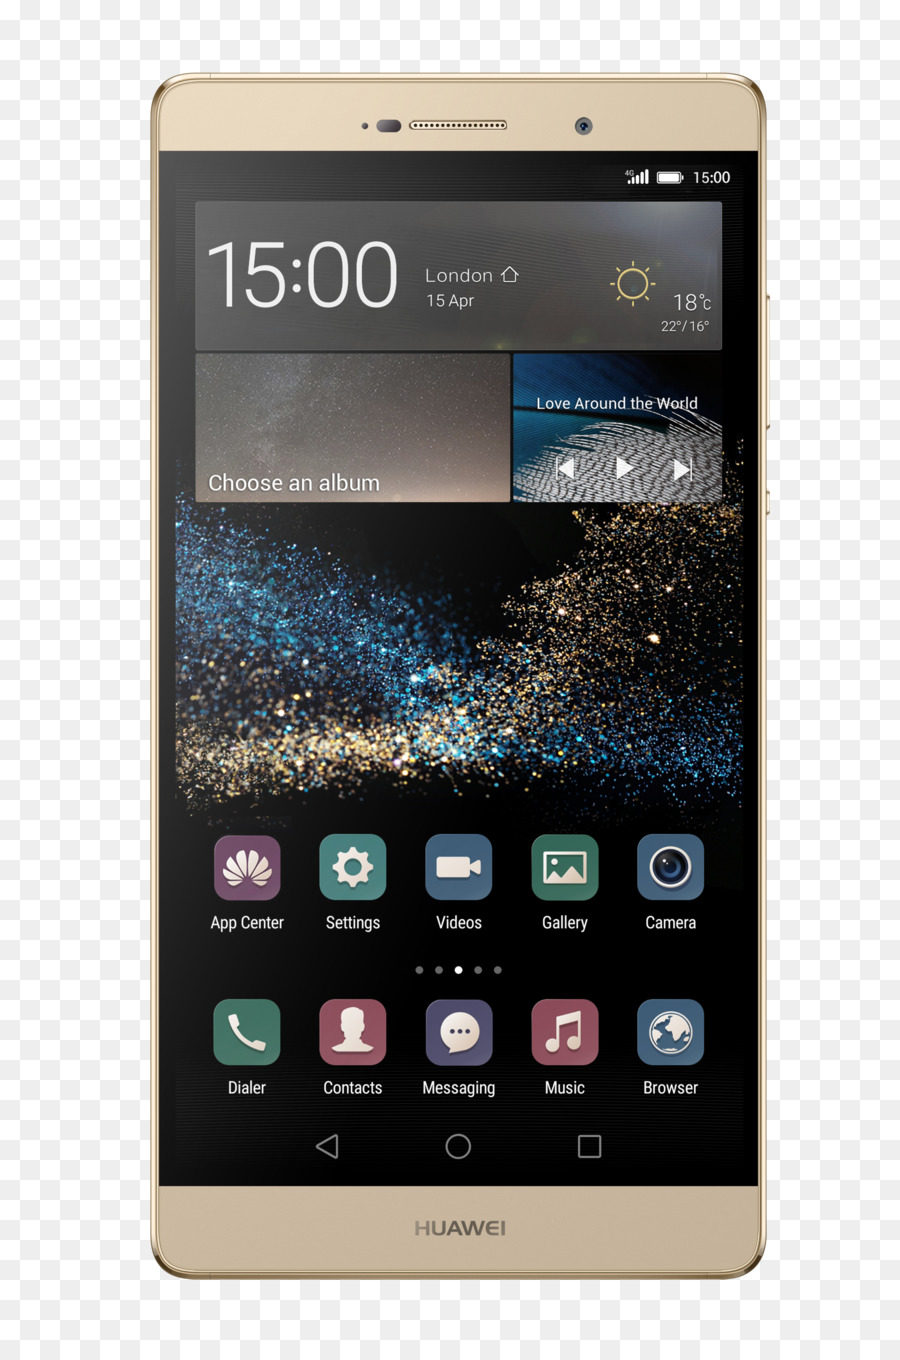 Huawei P8max Thoại iphone 4G - điện thoại thông minh